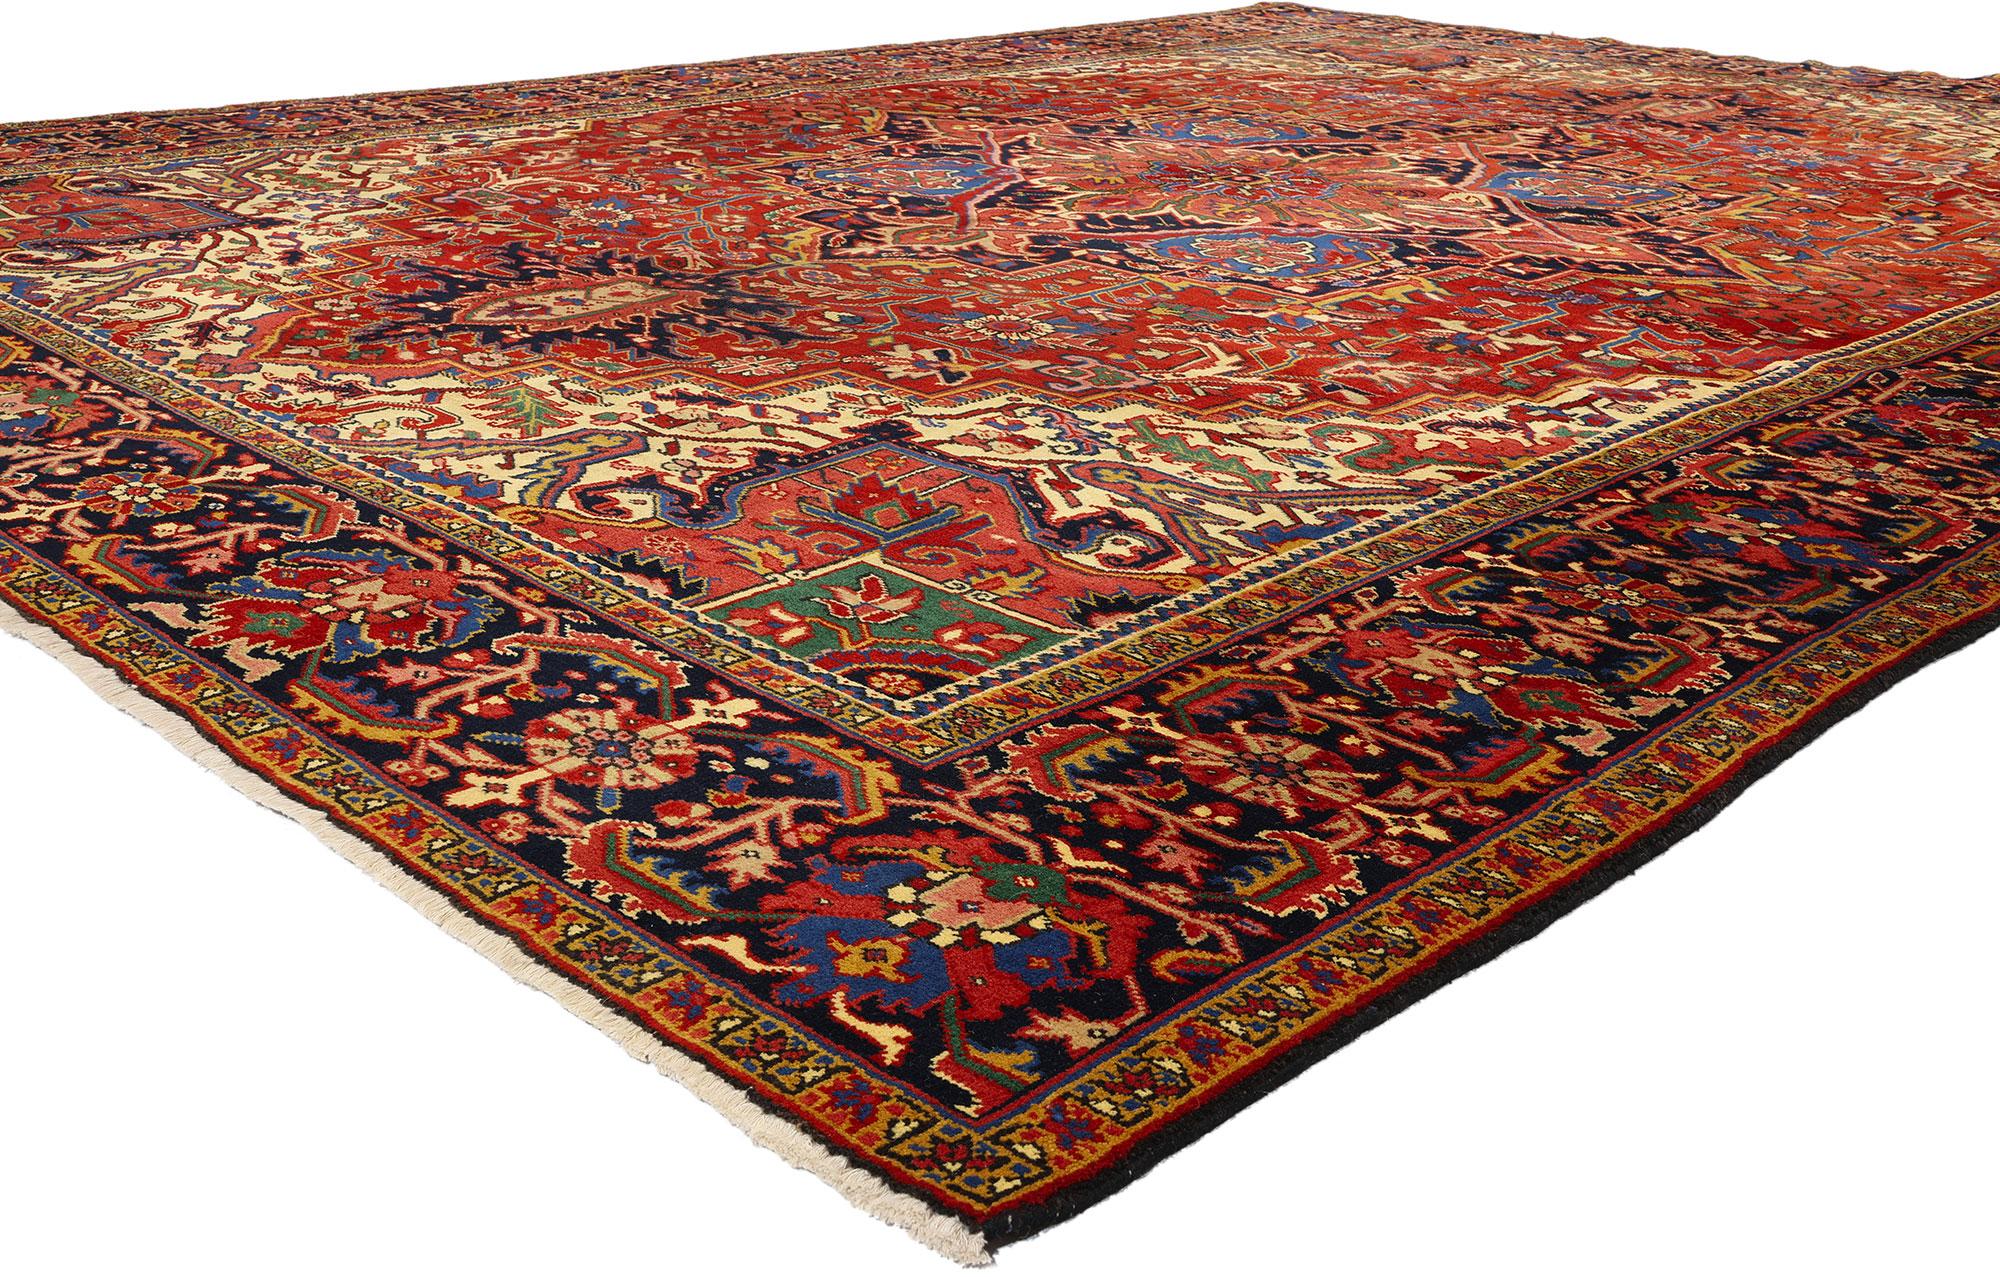 81069 Vintage Persian Heriz Rug, 09'11 x 13'00. Die aus der Region Heris im Nordwesten Irans stammenden persischen Heriz-Teppiche sind bekannt für ihre präzisen geometrischen Muster und die akribische Ausarbeitung der Motive. Diese Teppiche werden